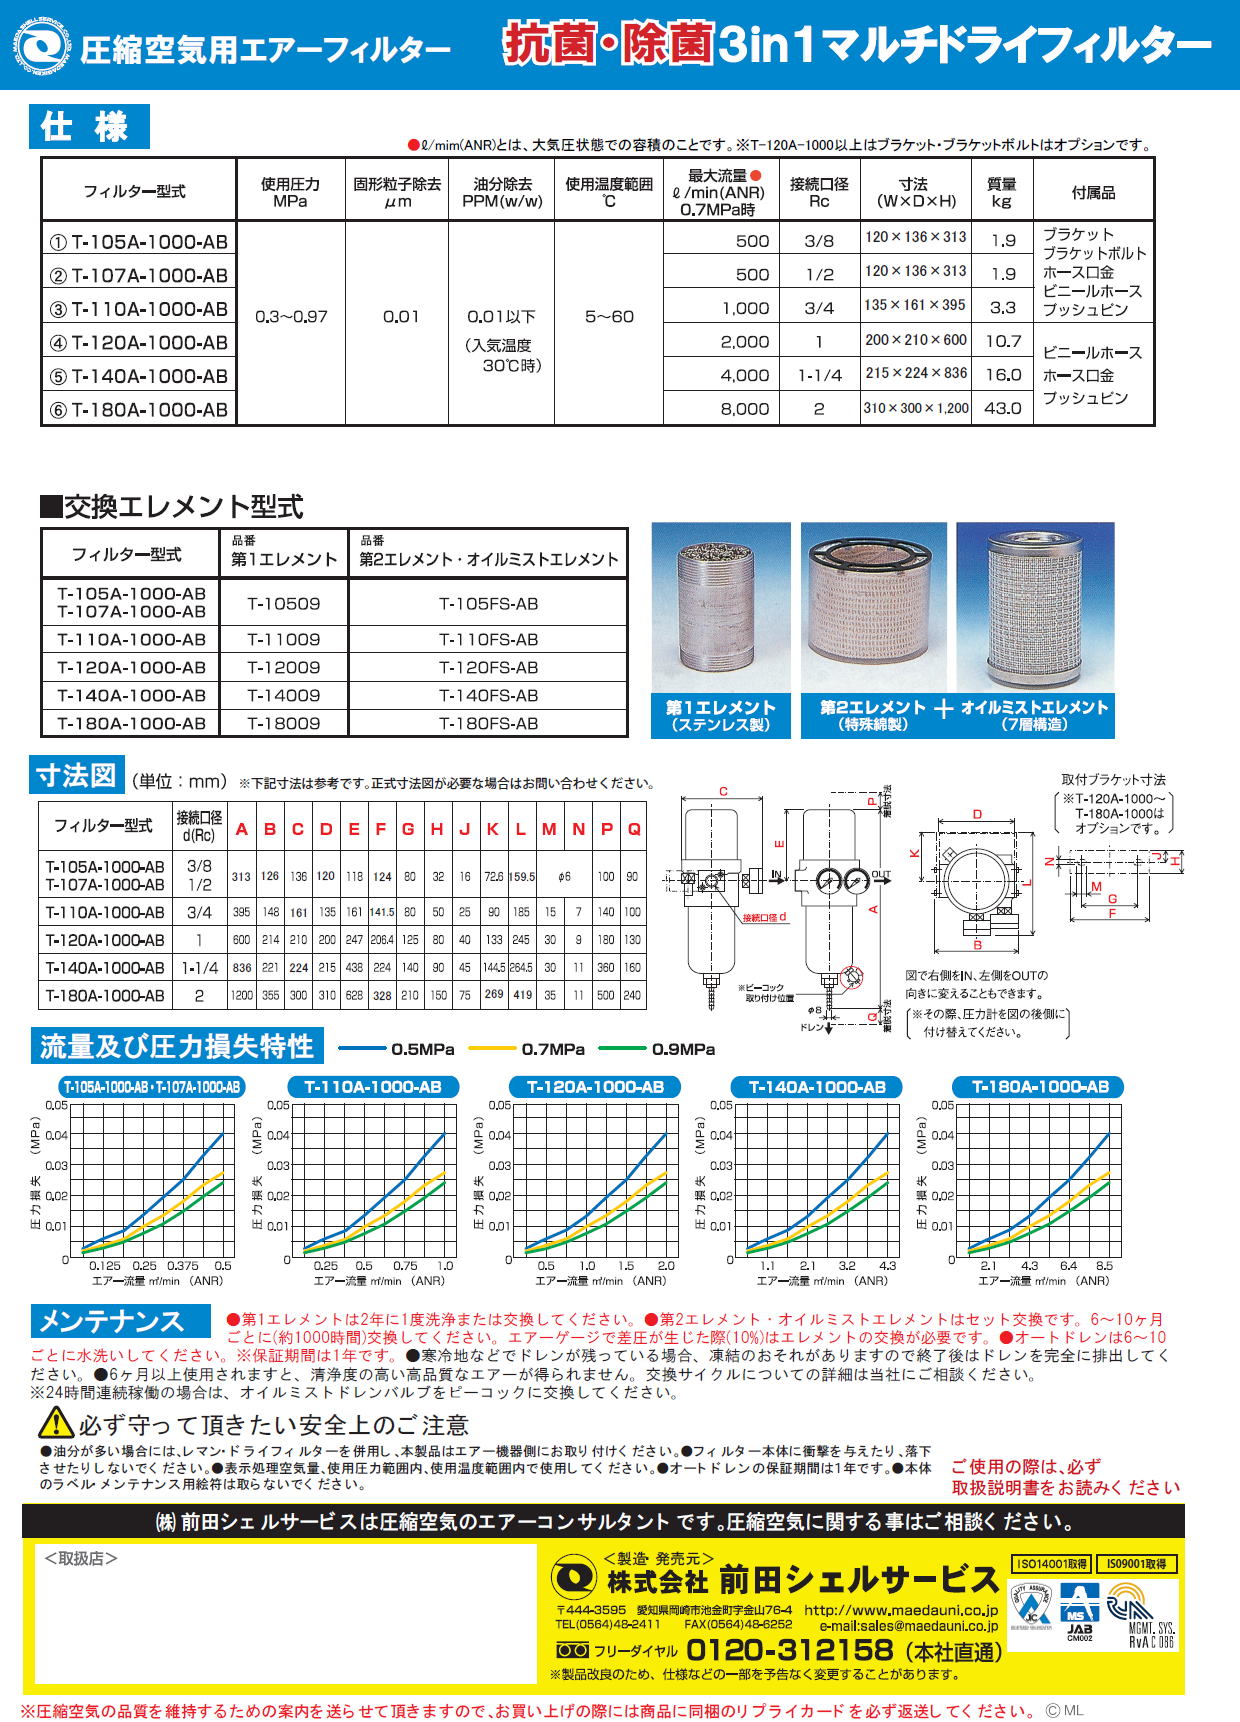 前田シェルサービス 抗菌3in1・マルチドライフィルター 圧縮空気用エアーフィルター